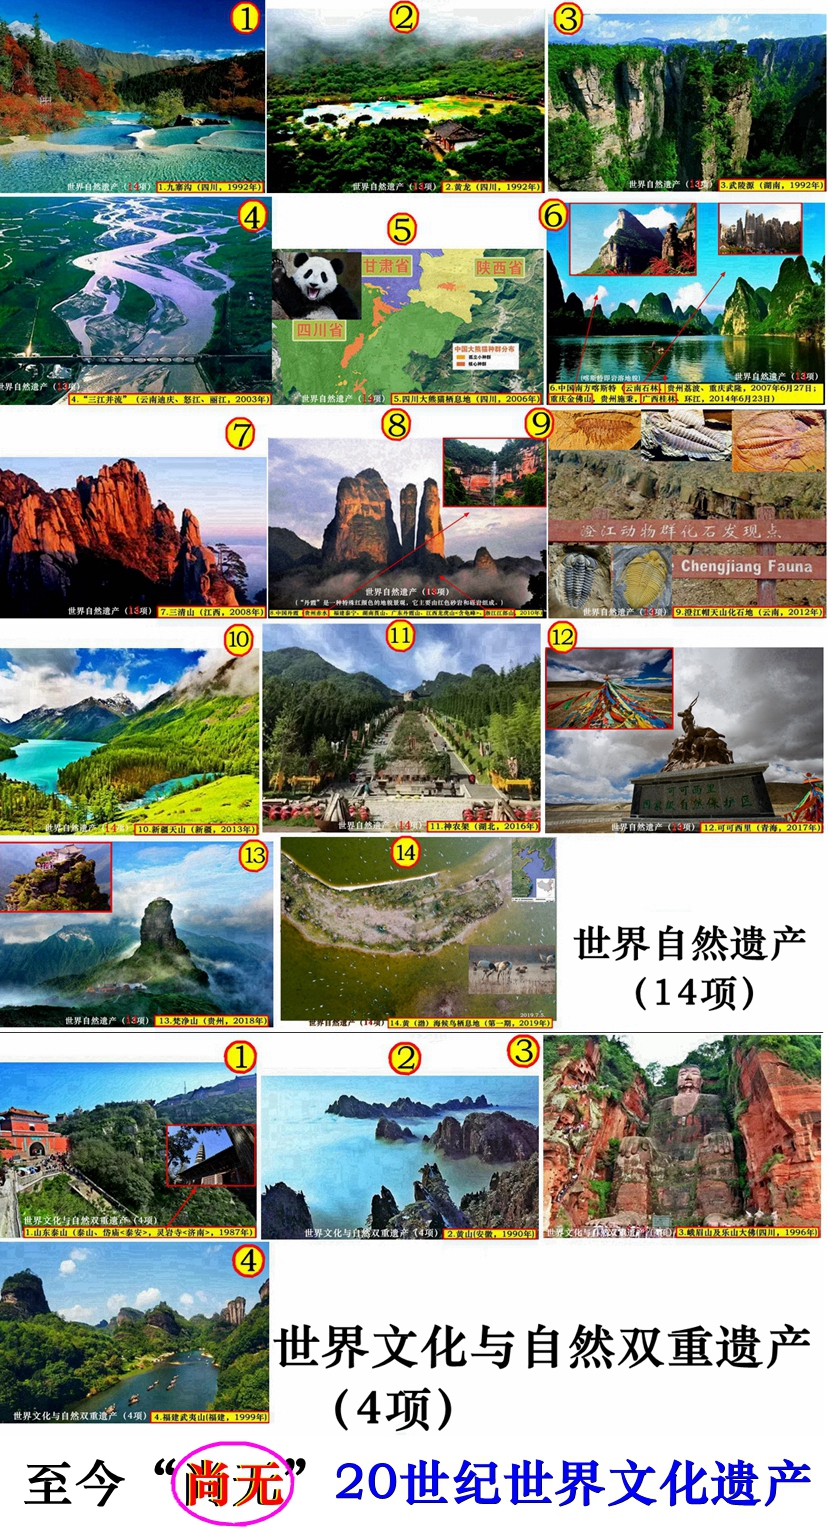 中国世界文化遗产分布 中国世界遗产文化景观 中国世界文化遗产长城